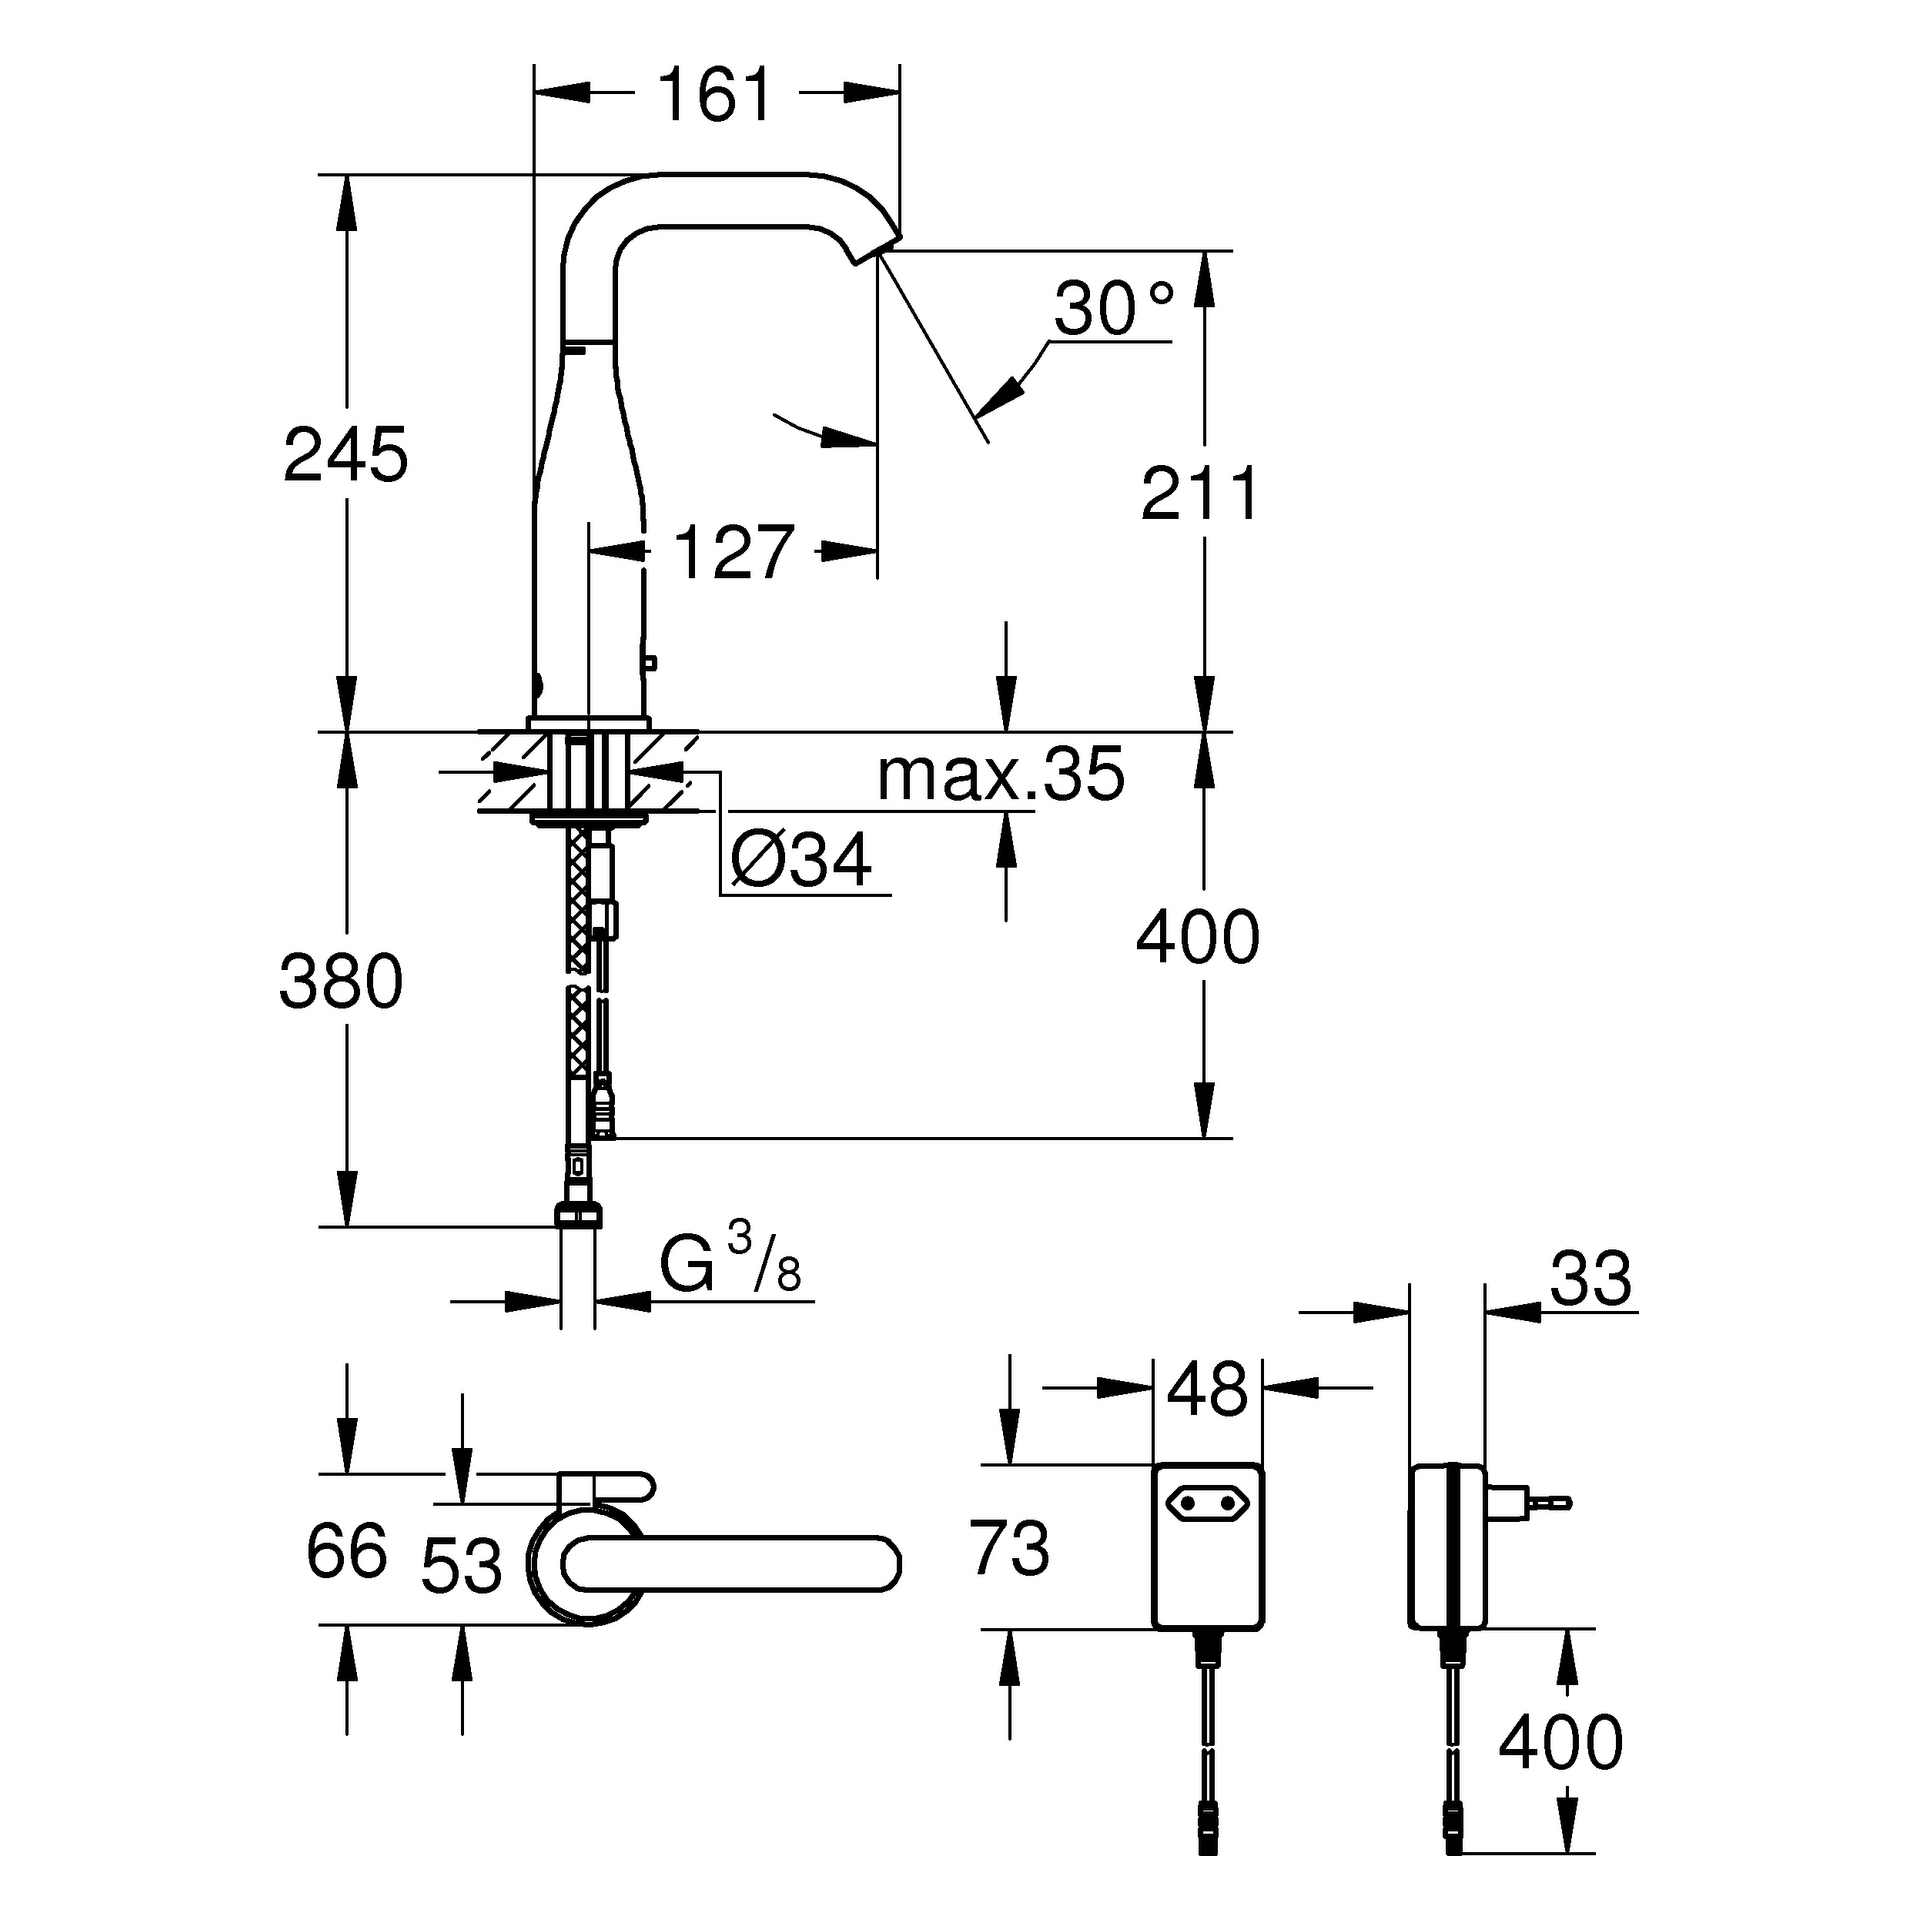 Infrarot-Elektronik für Waschtisch Essence E 36444, DN 15 mit Mischung und variabel einstellbarem Temperaturbegrenzer, mit Steckertrafo 100-230 V AC, 50-60 Hz, 6 V DC, Laminarstrahlregler 5,7 l/min, chrom